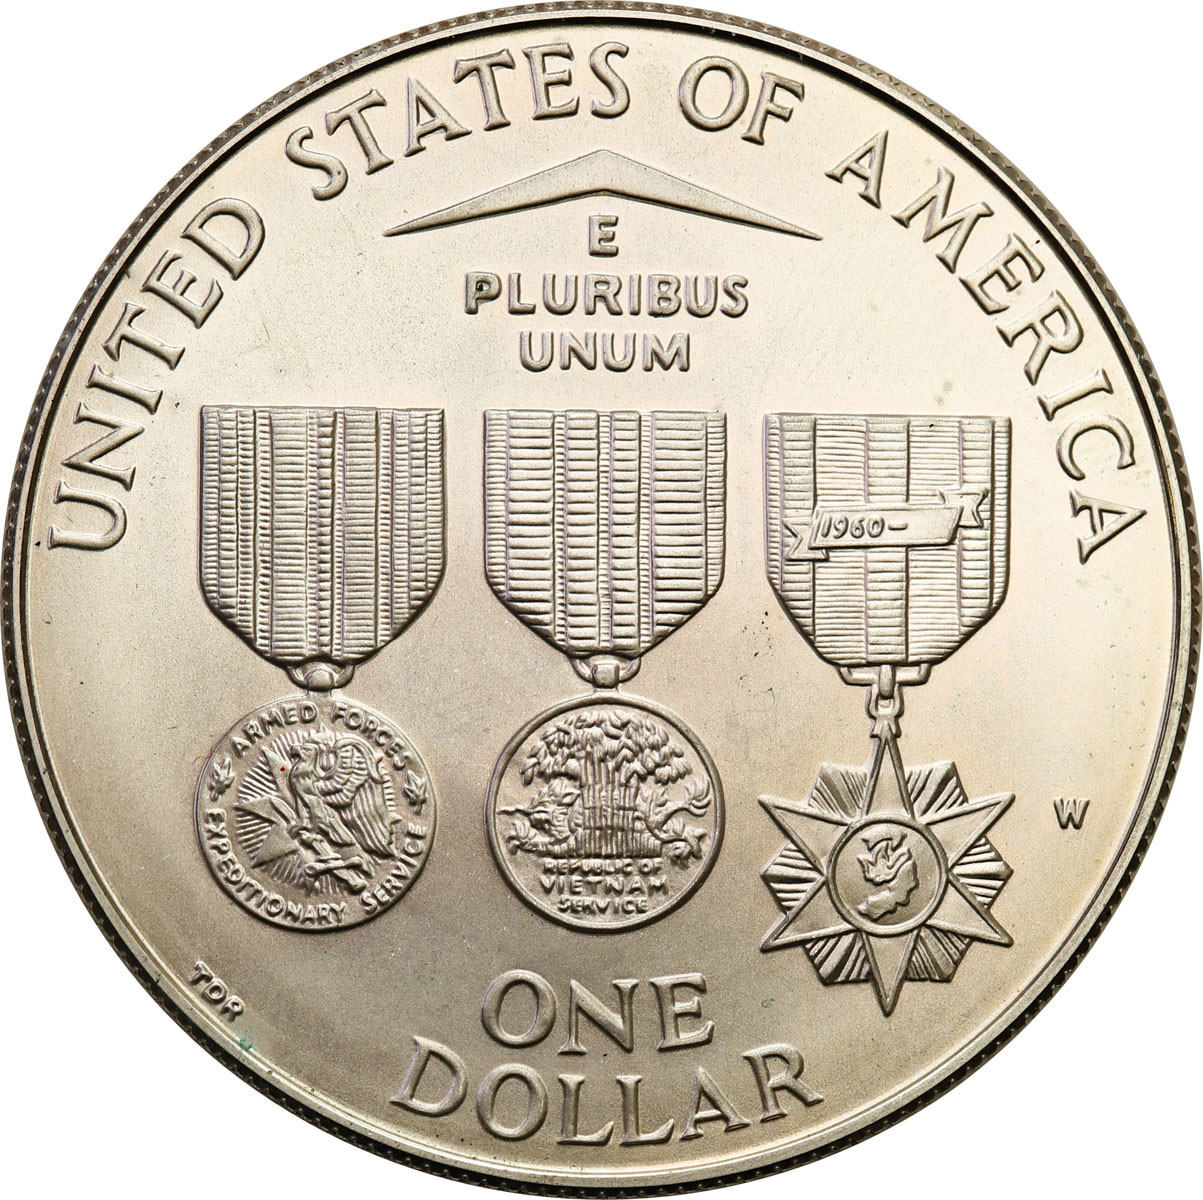 USA. Dolar 1994 W, Pomnik Weteranów Wietnamu